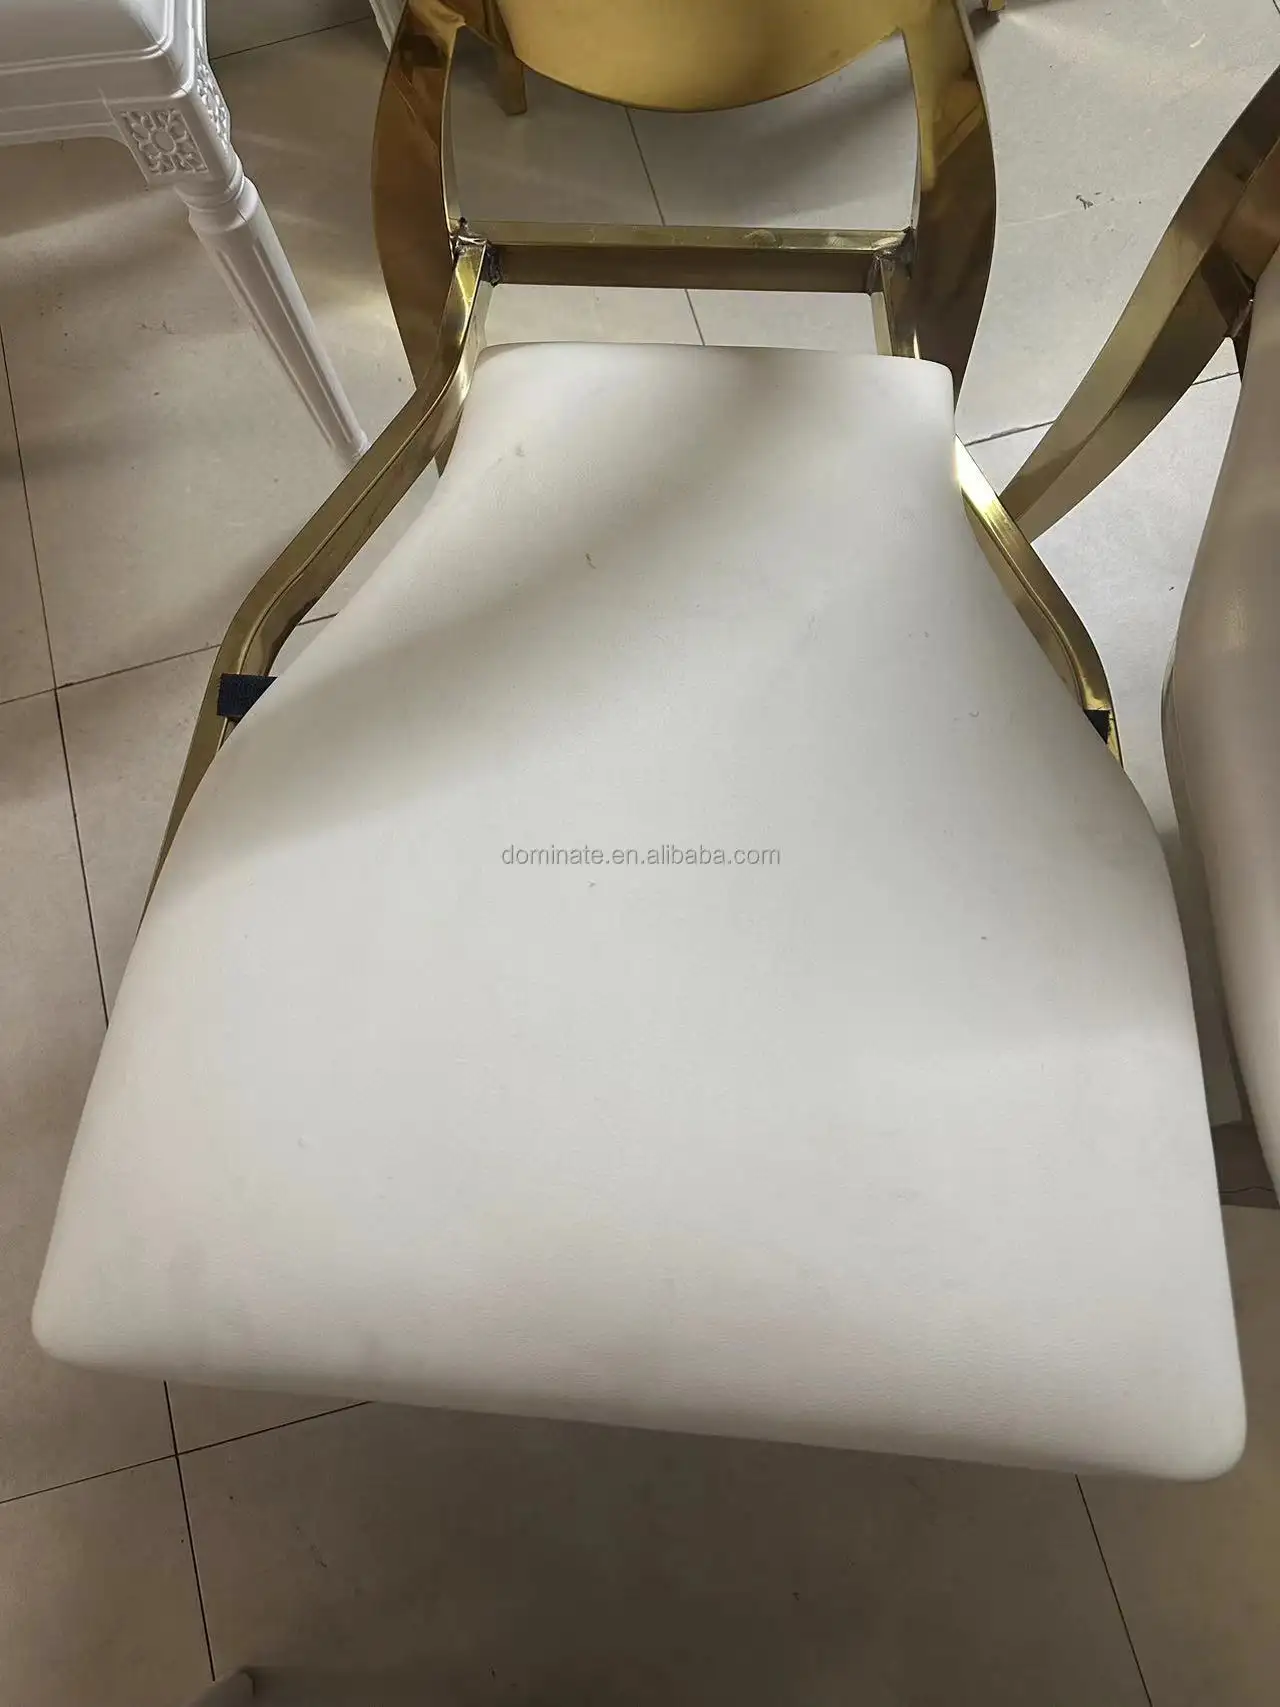 Cadeira de casamento luxuosa King Throne Cadeira de hotel com encosto alto em aço inoxidável branco couro PU Cadeiras de jantar Royal